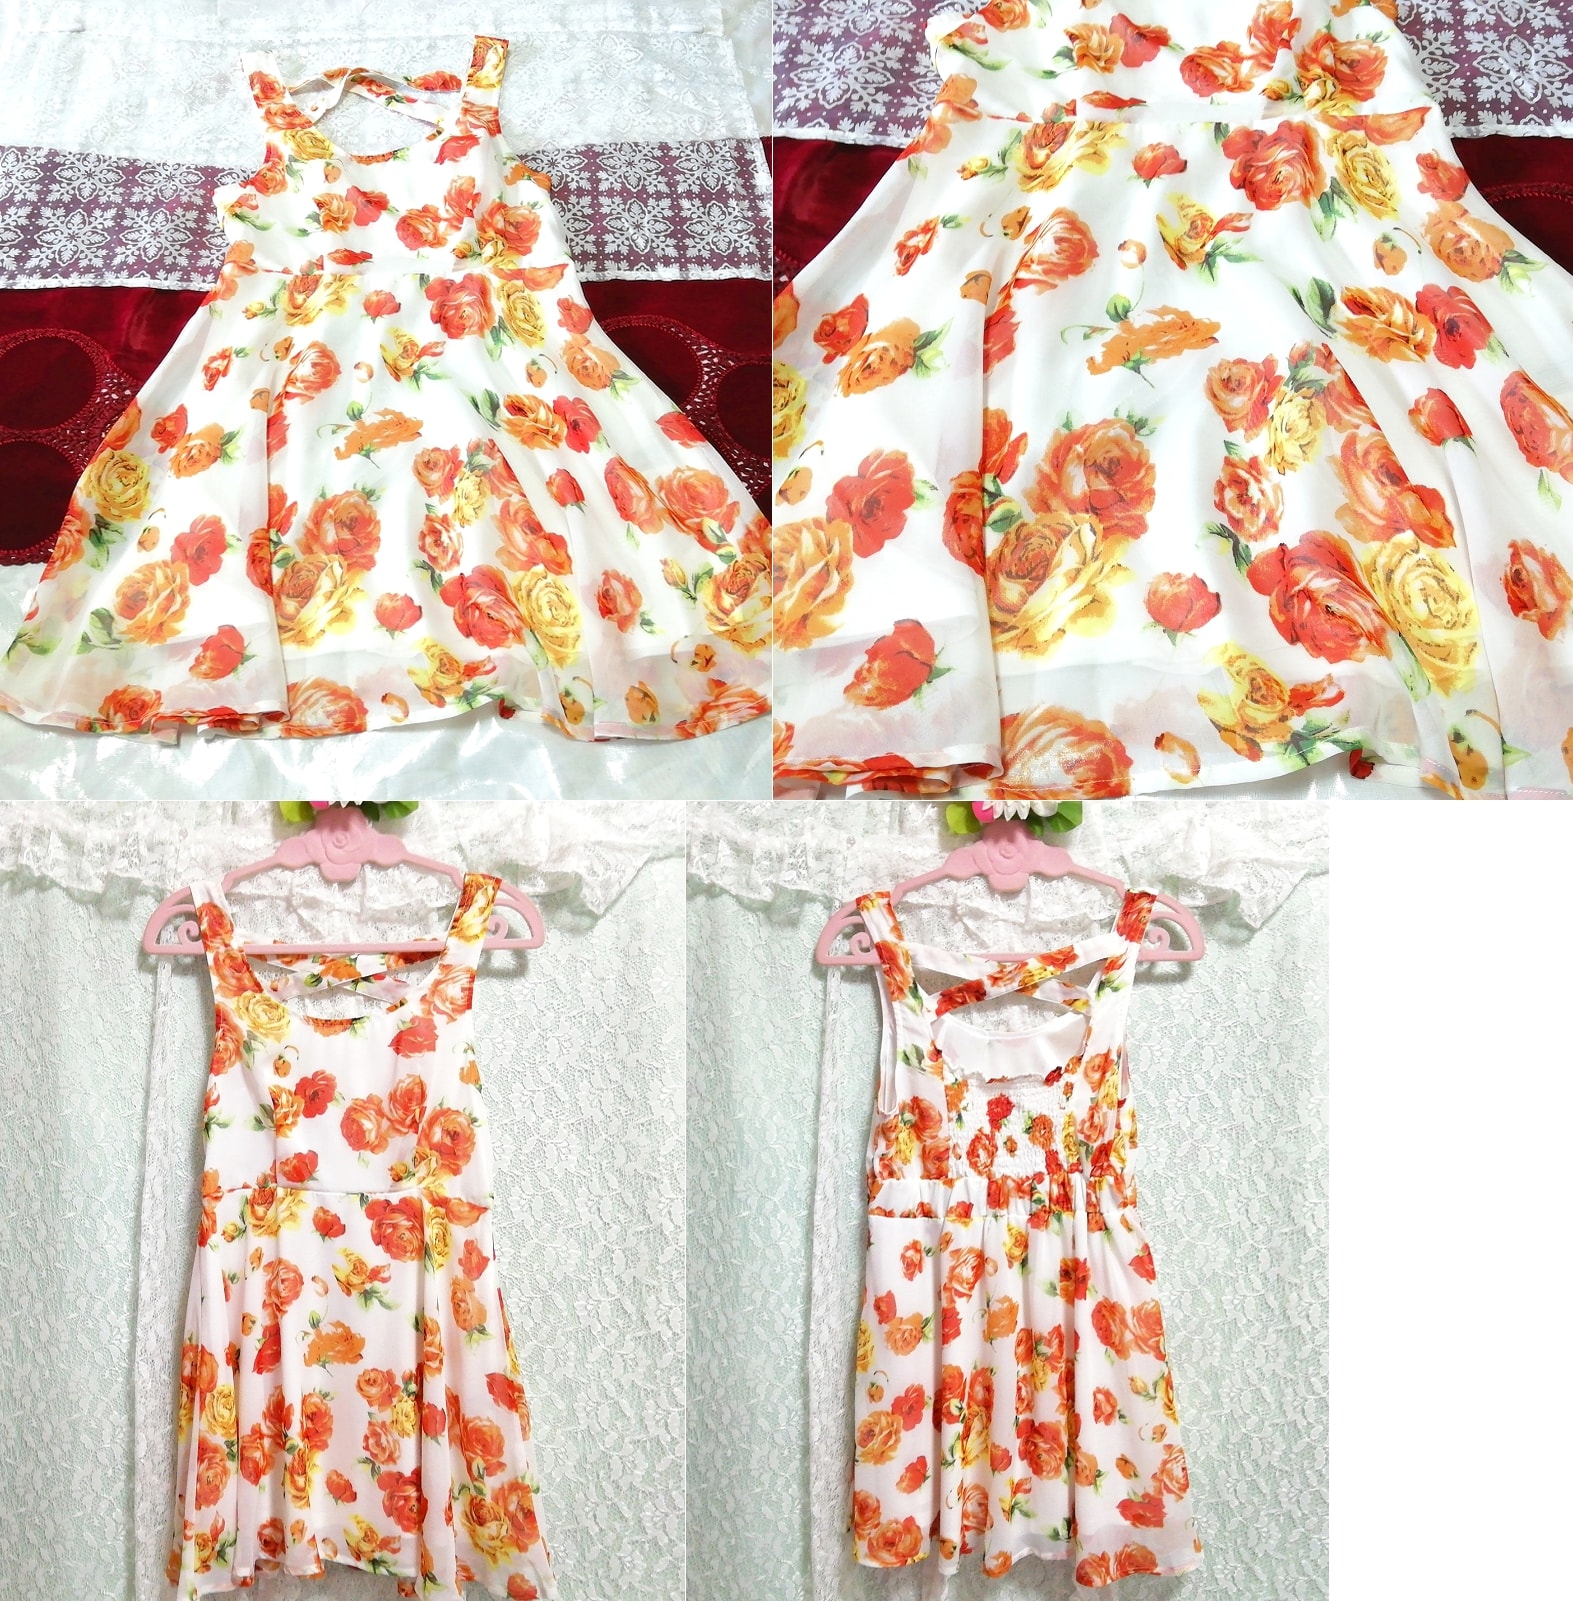 Mini-robe de nuit en mousseline de soie, motif floral, blanc, rouge, orange, sans manches, déshabillé, mini jupe, taille m